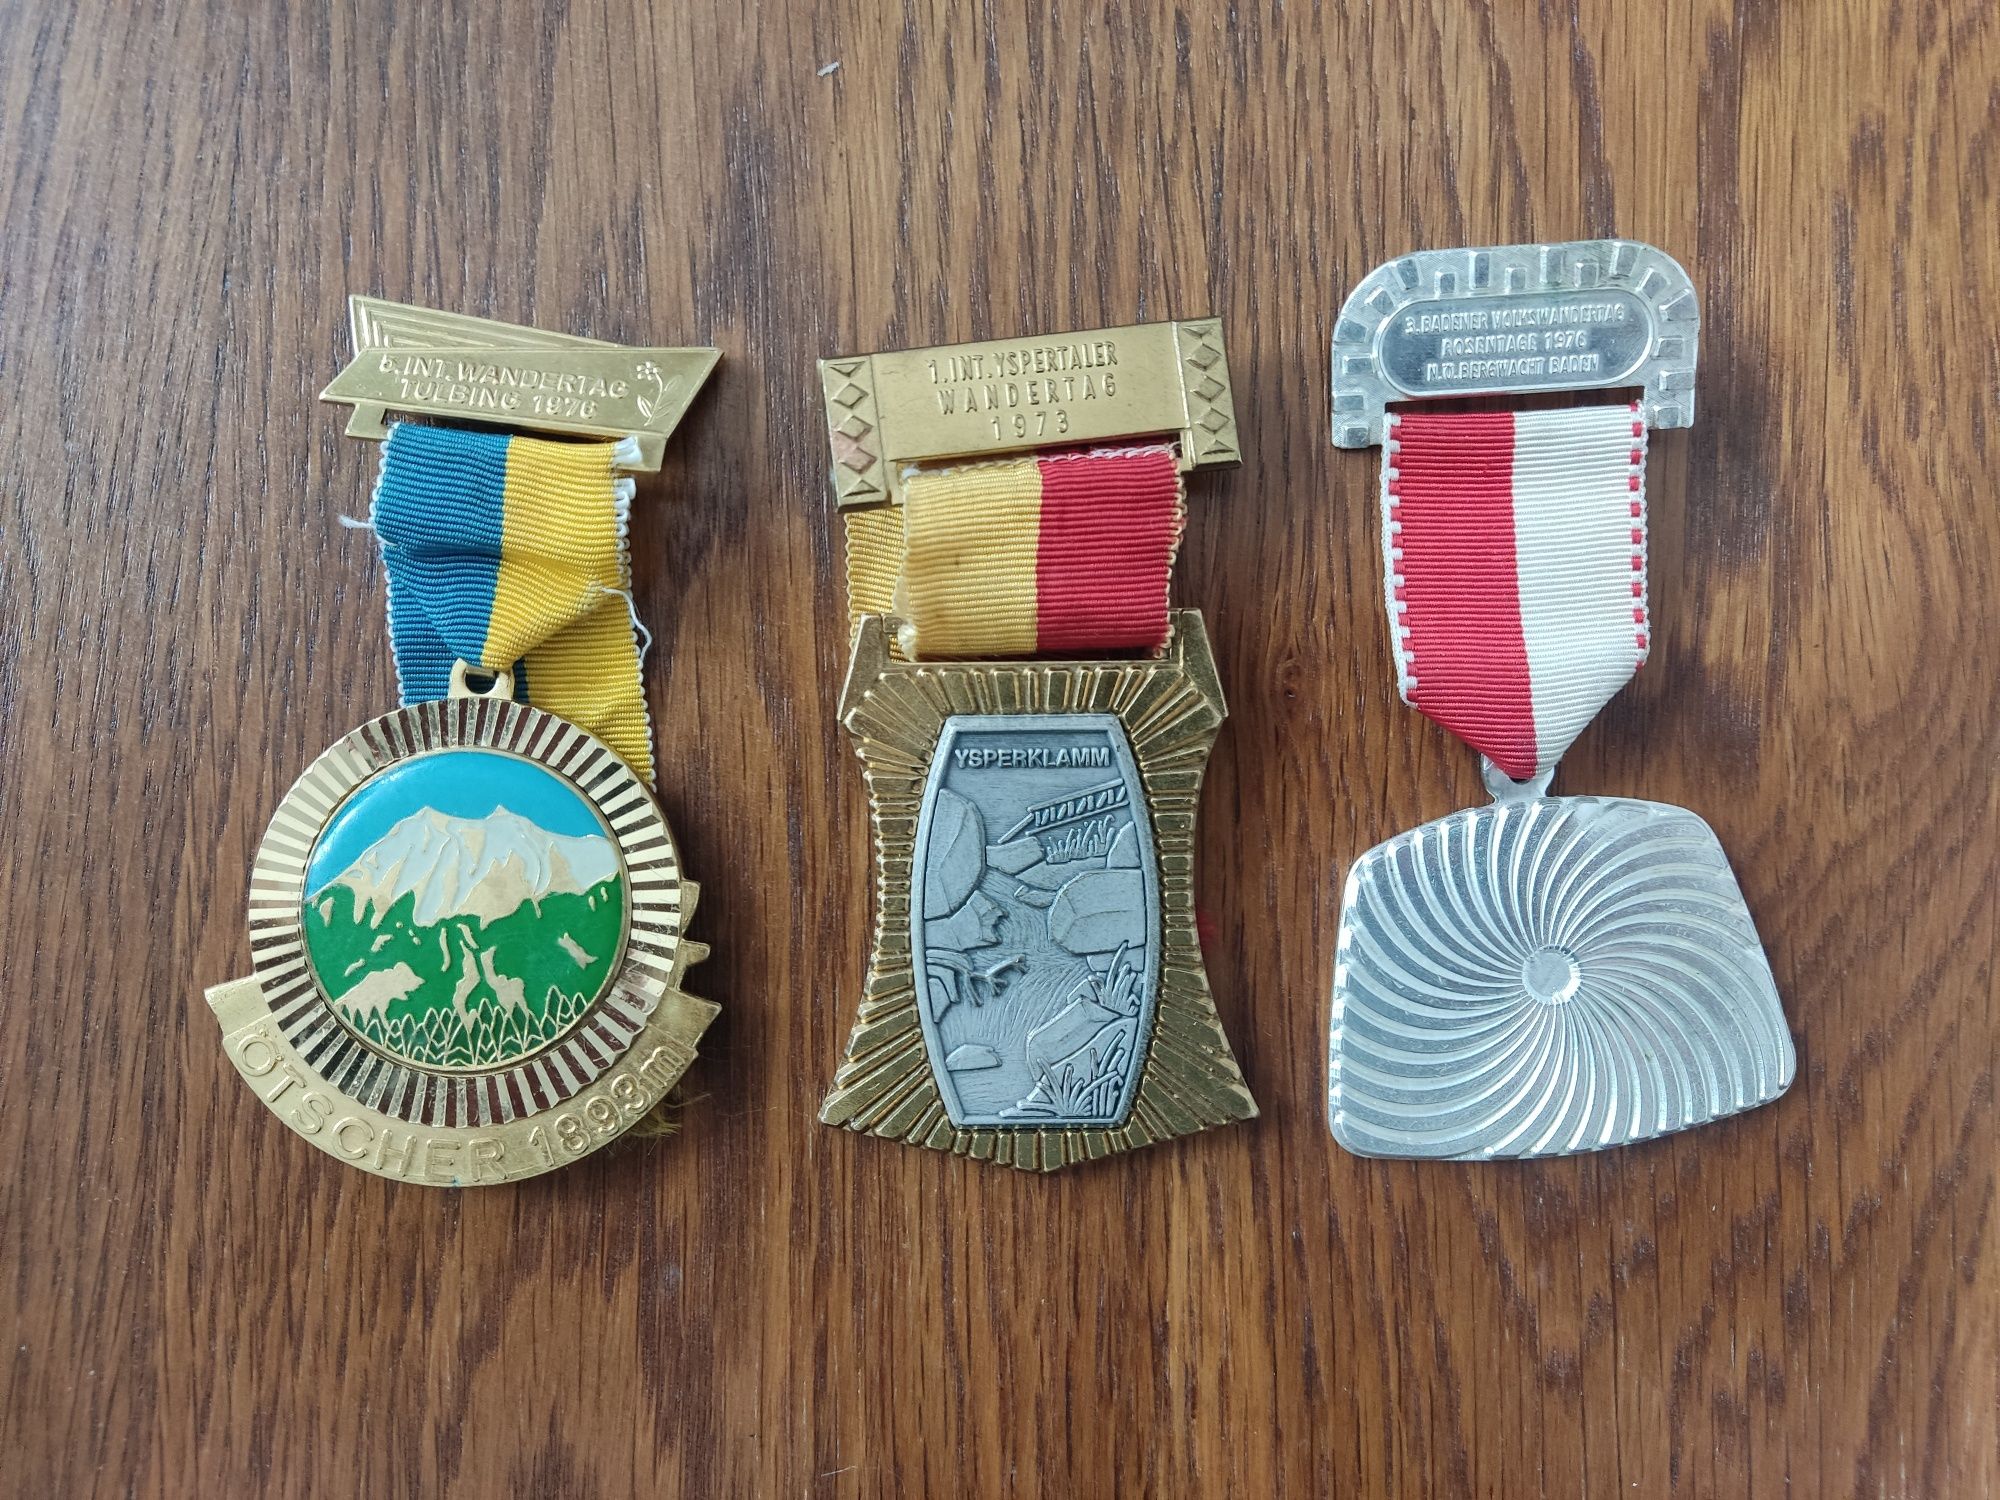 Vând medalii de colecție